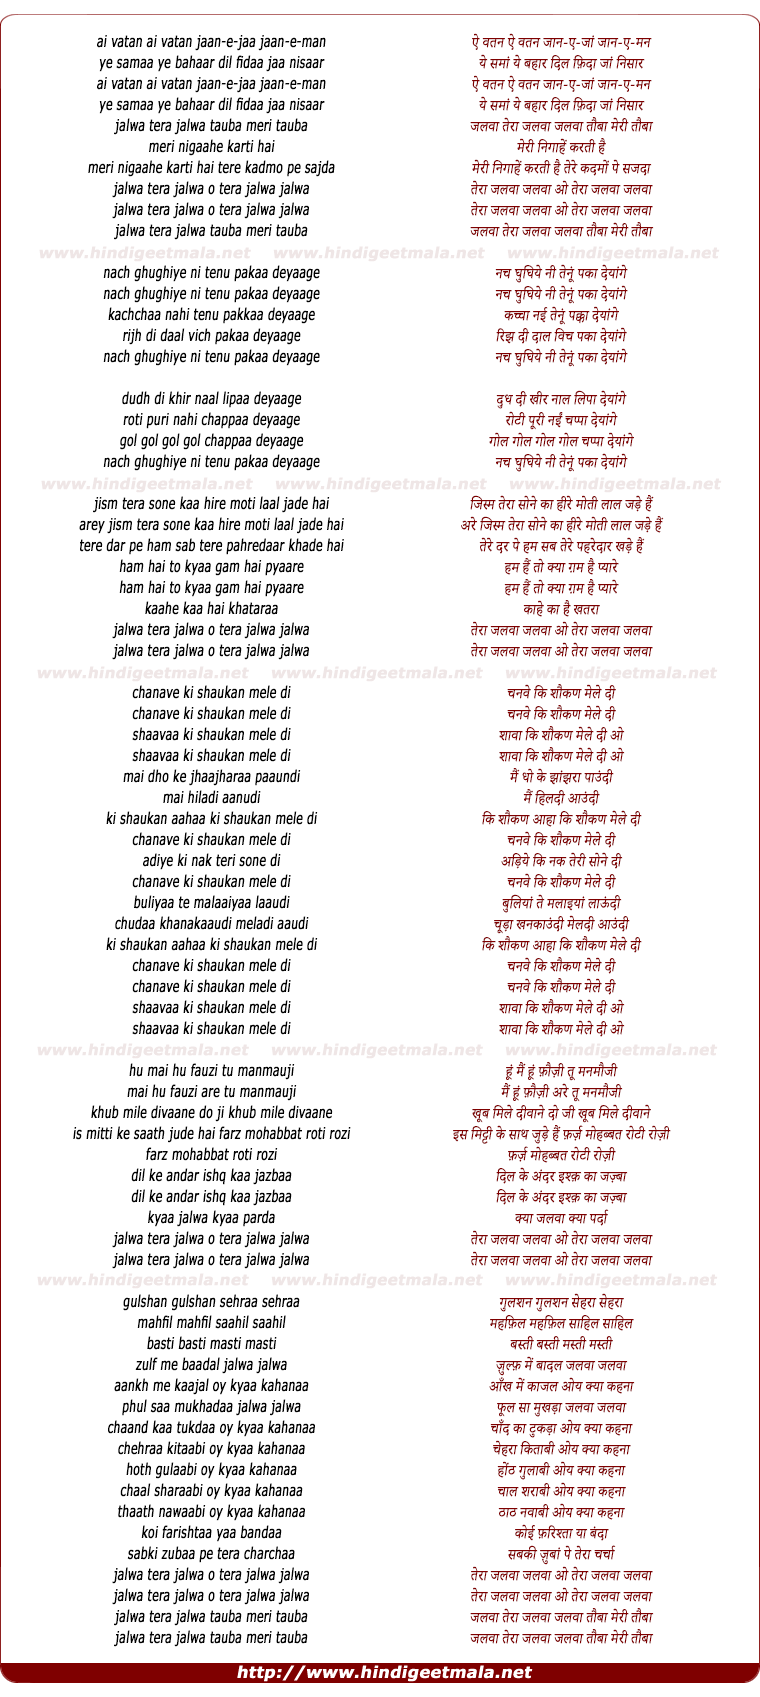 lyrics of song Ae Vatan Jaan-E-Jaan Jaan-E-Man (Jalwa Tera Jalwa)